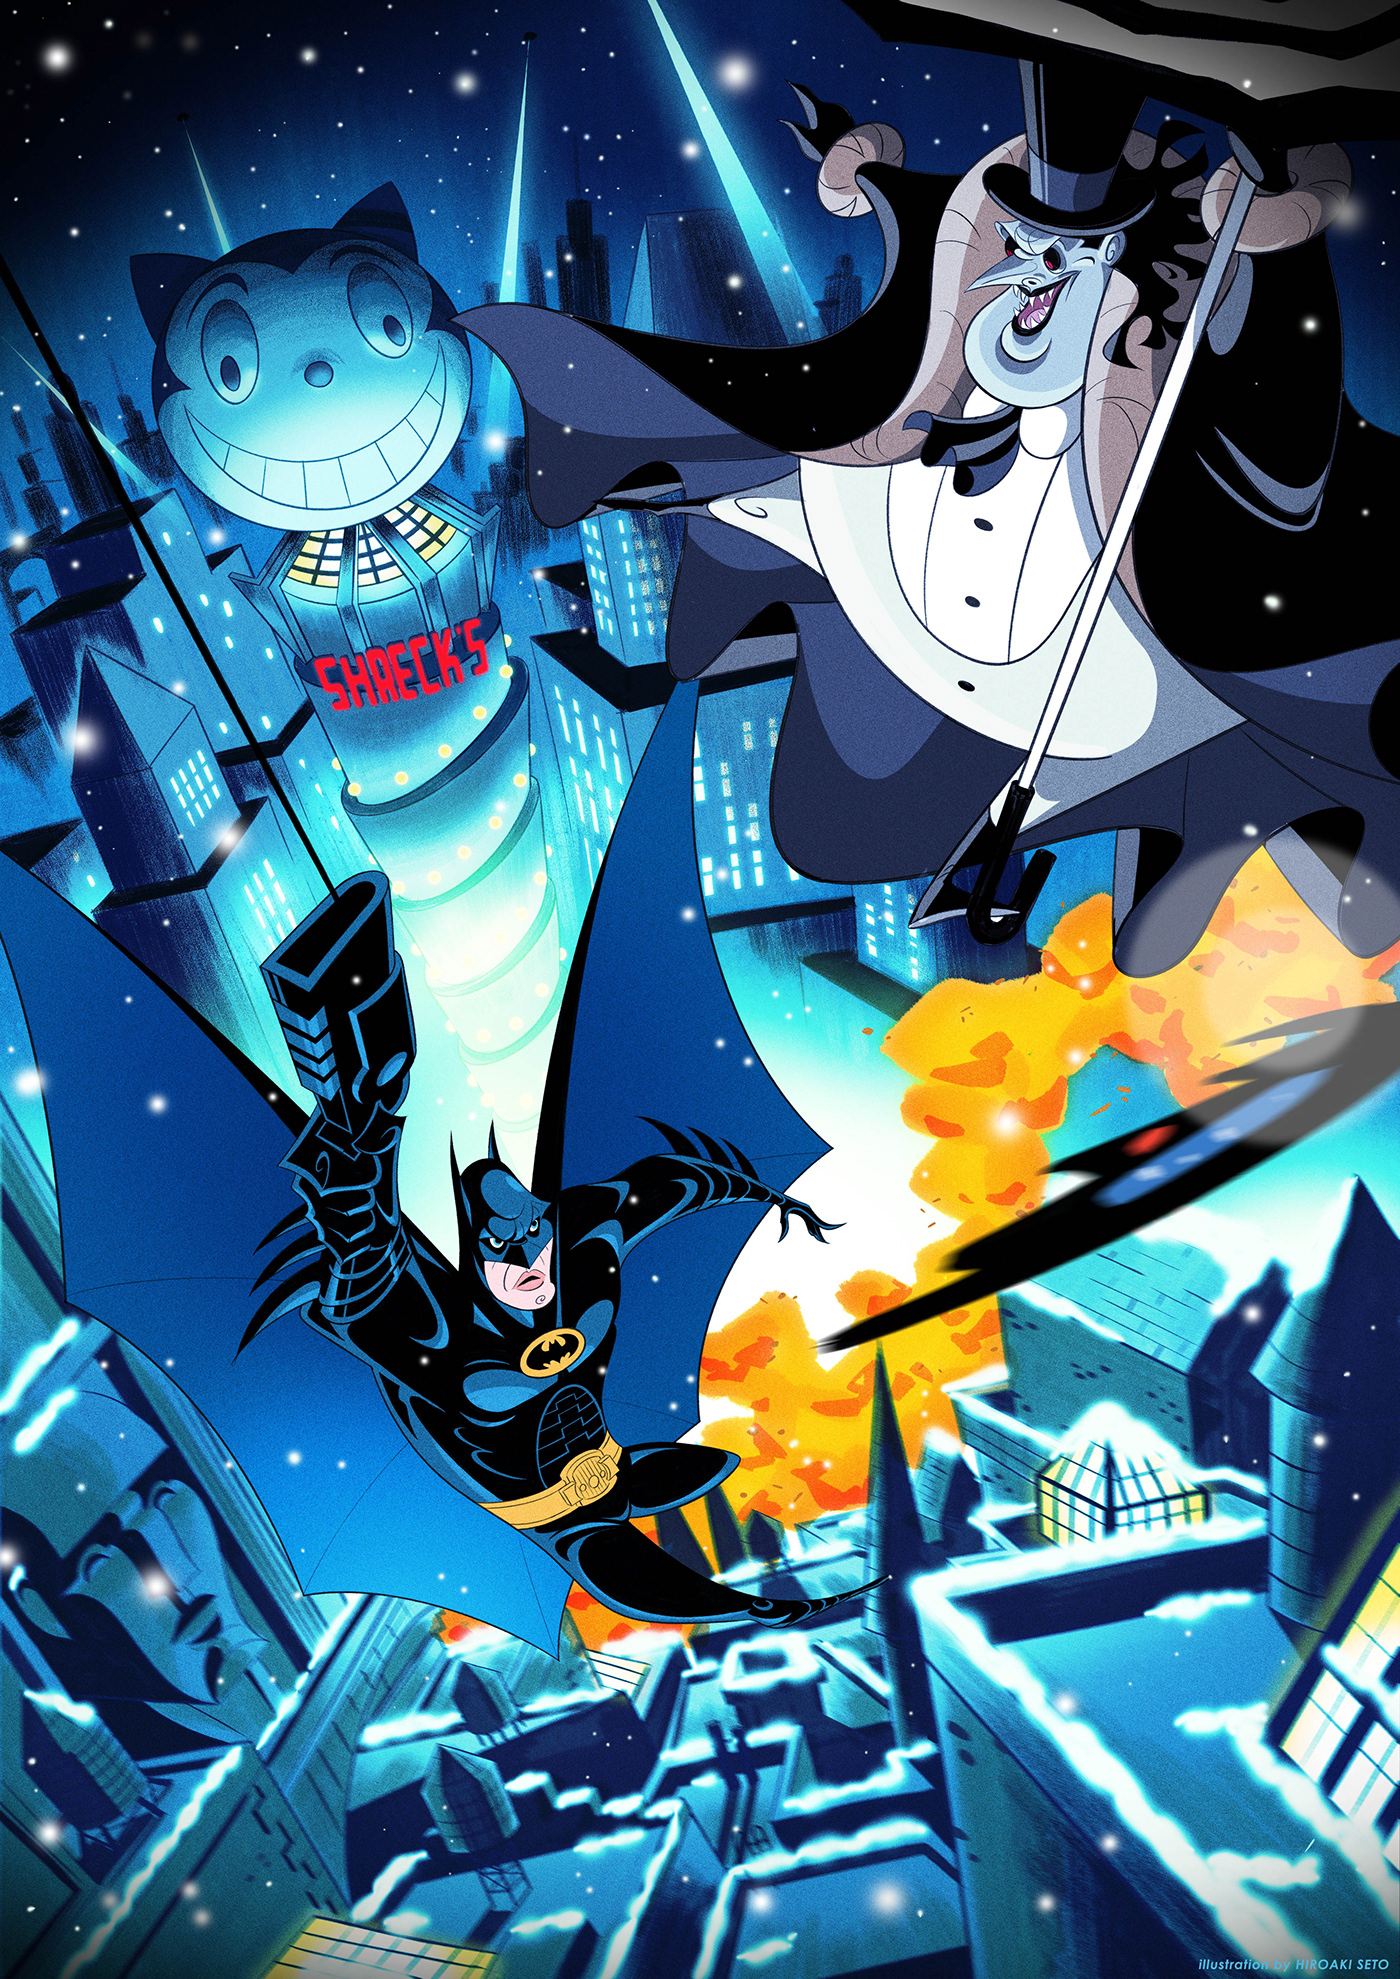 ILLUSTRATION  batman comics cartoon Dc Comics Christmas winter illustrations Character design  Digital Art 